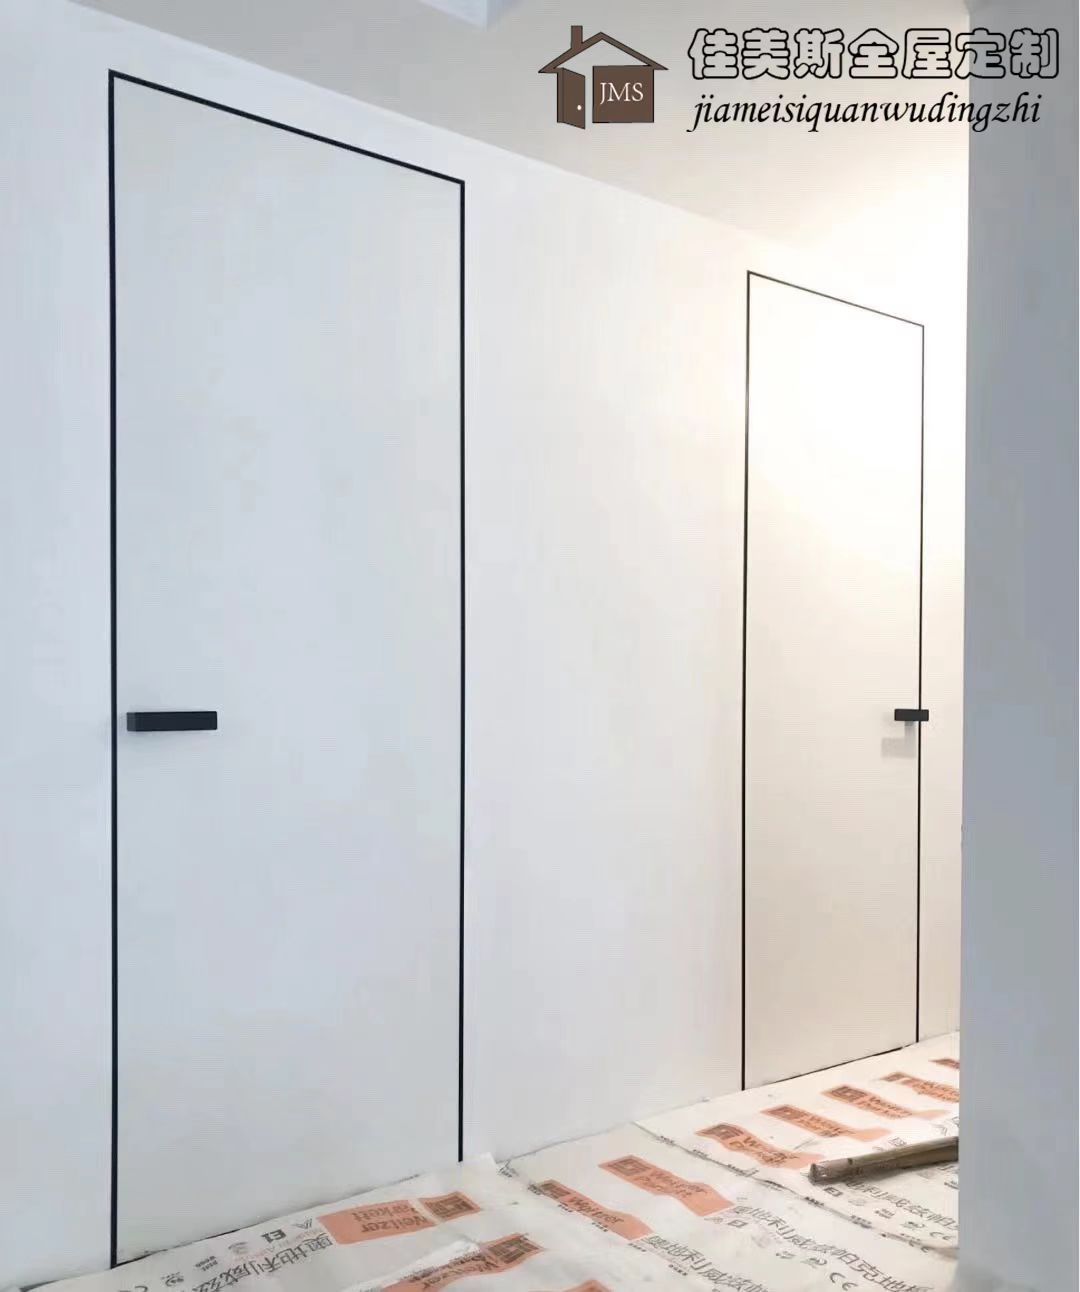 北京定制黑色铝框极简无框隐形木门无漆环保室内木门卧室门套装门